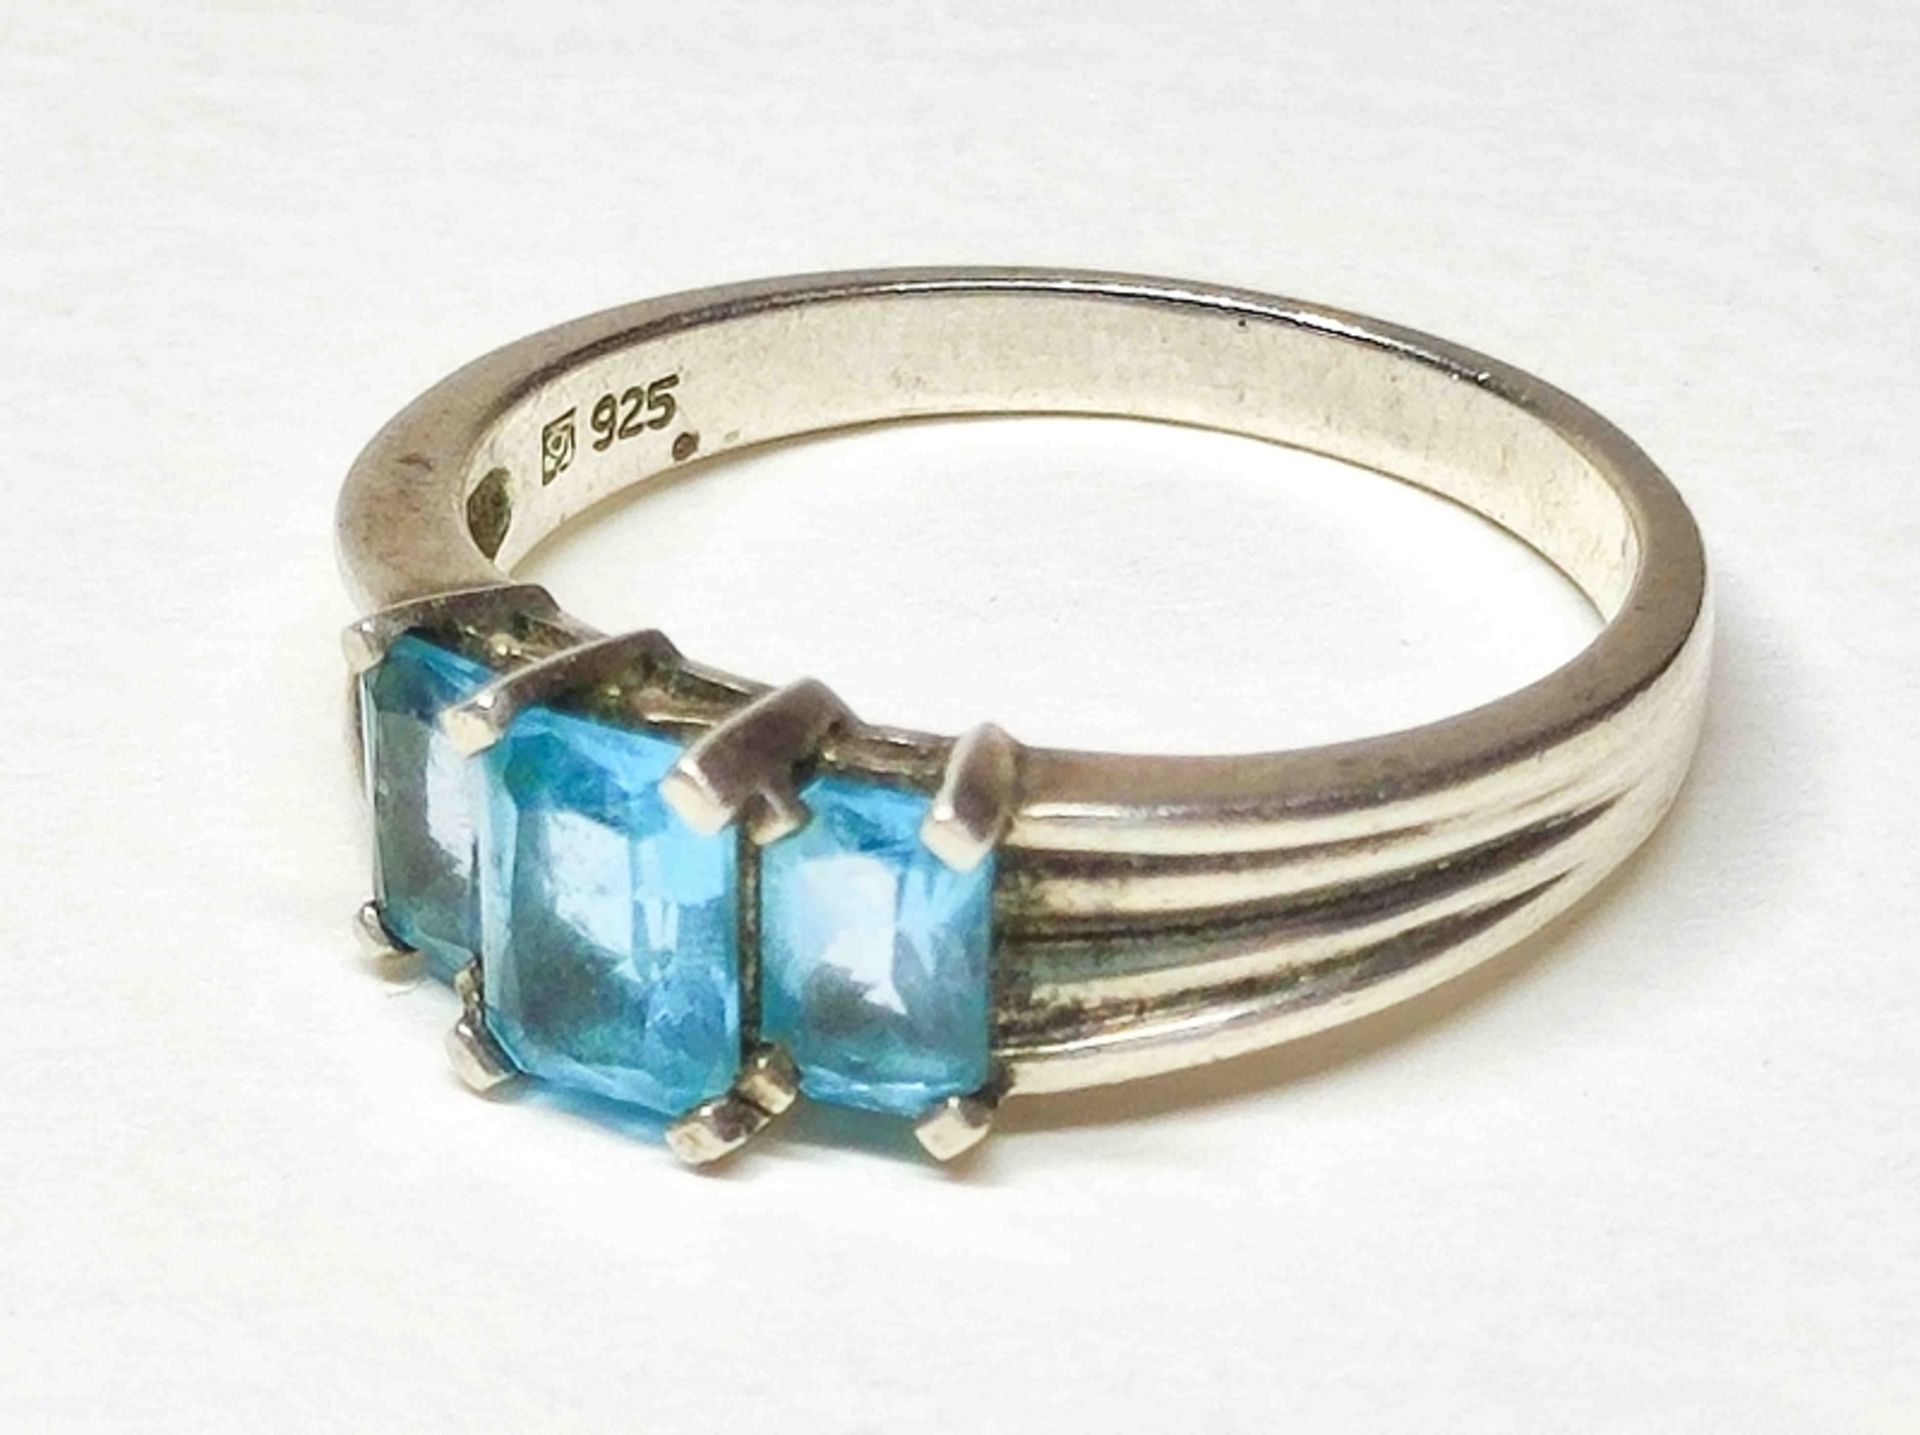 XL 925er Silber Ring + Blautopas